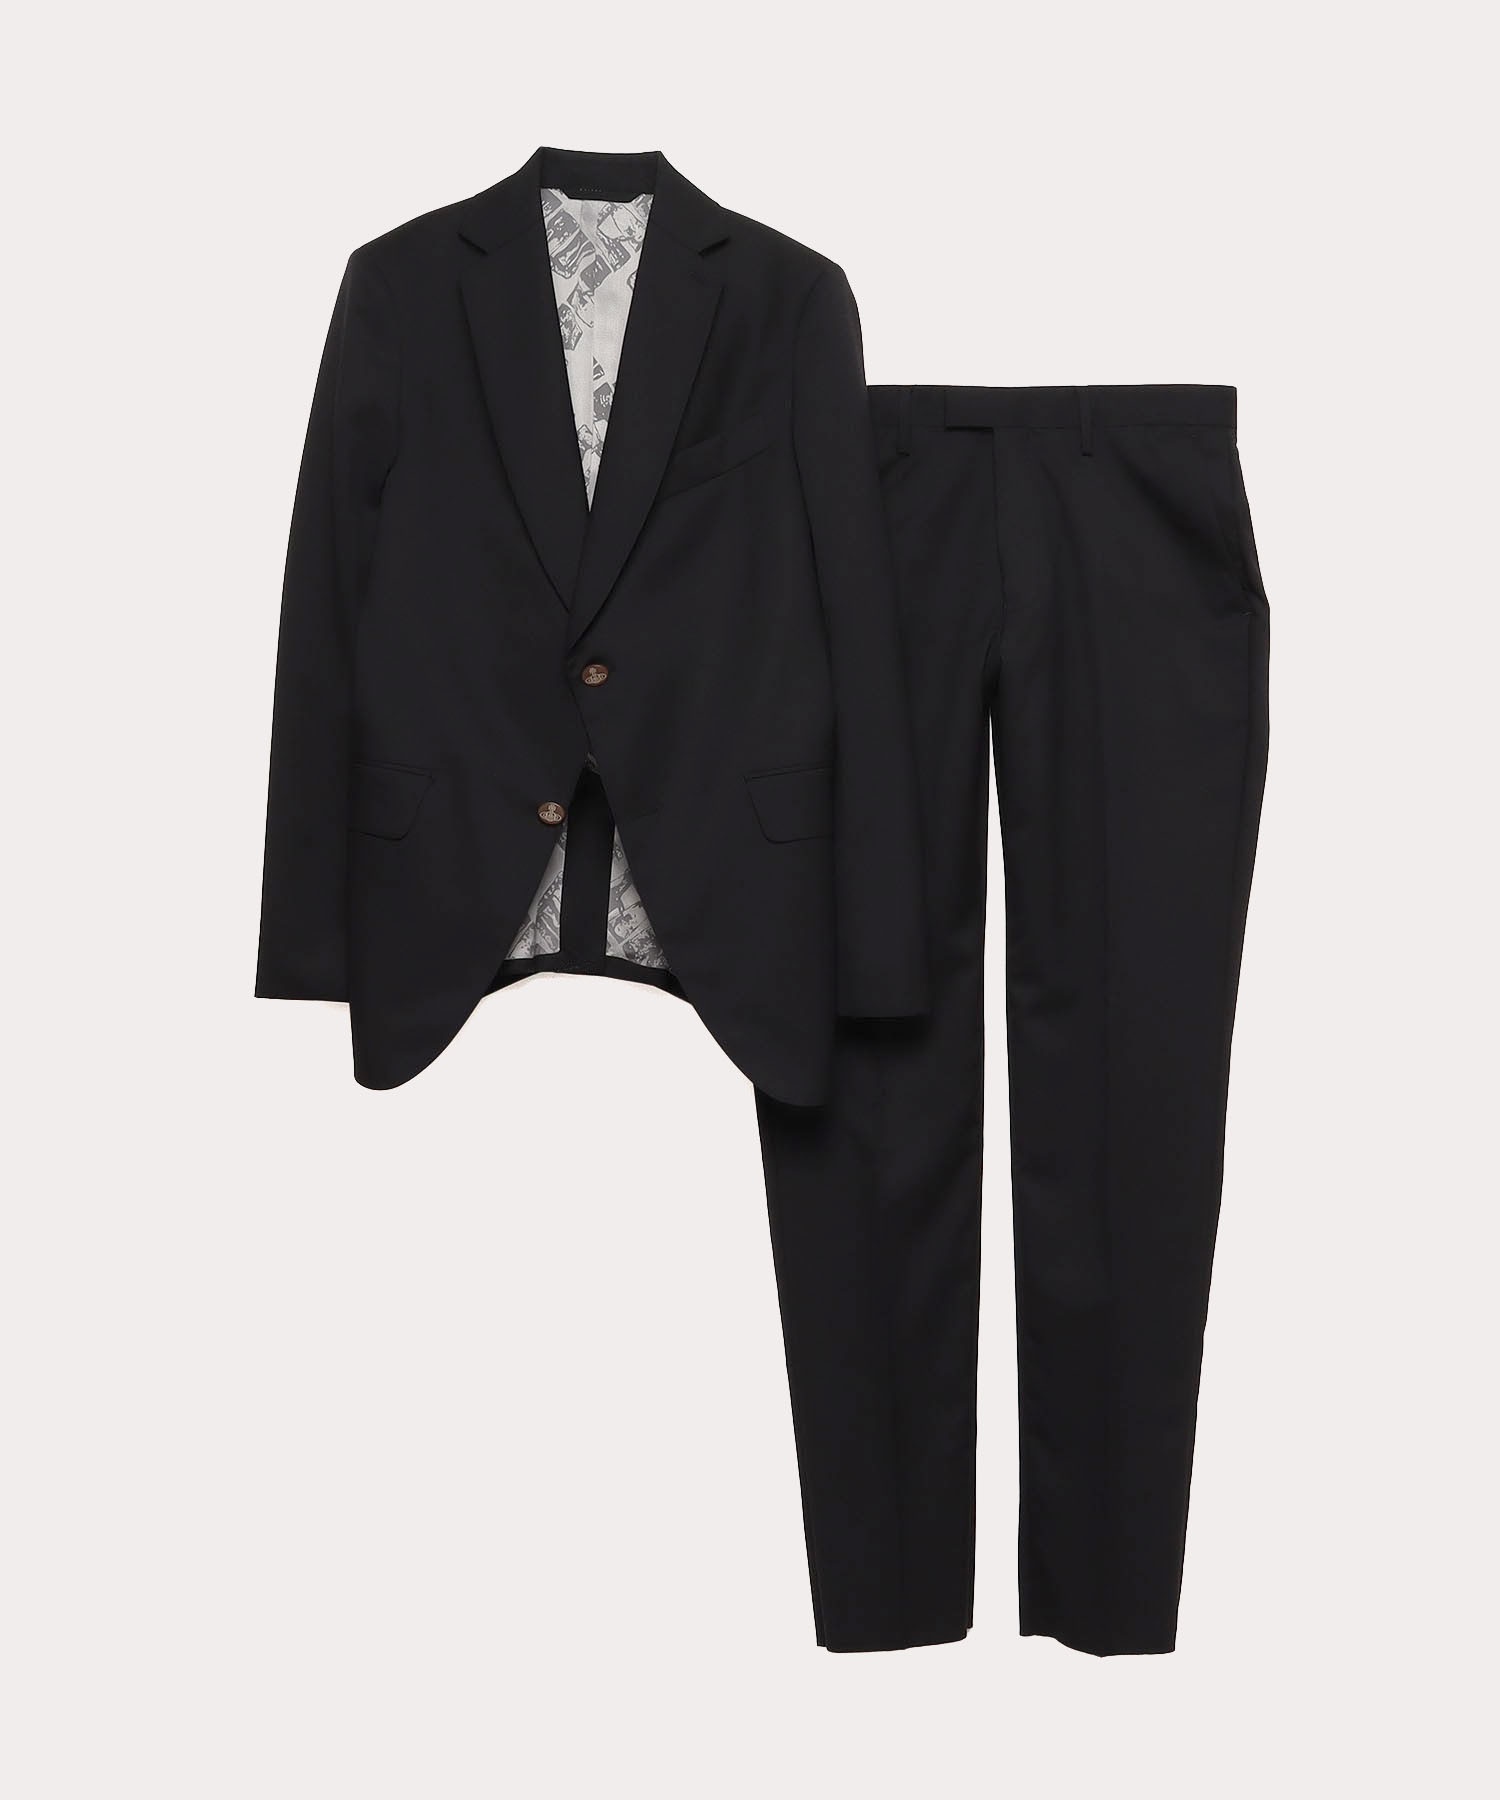 ヴィヴィアンウエストウッドラブジャケットスーツブラック黒 当店だけの限定モデル